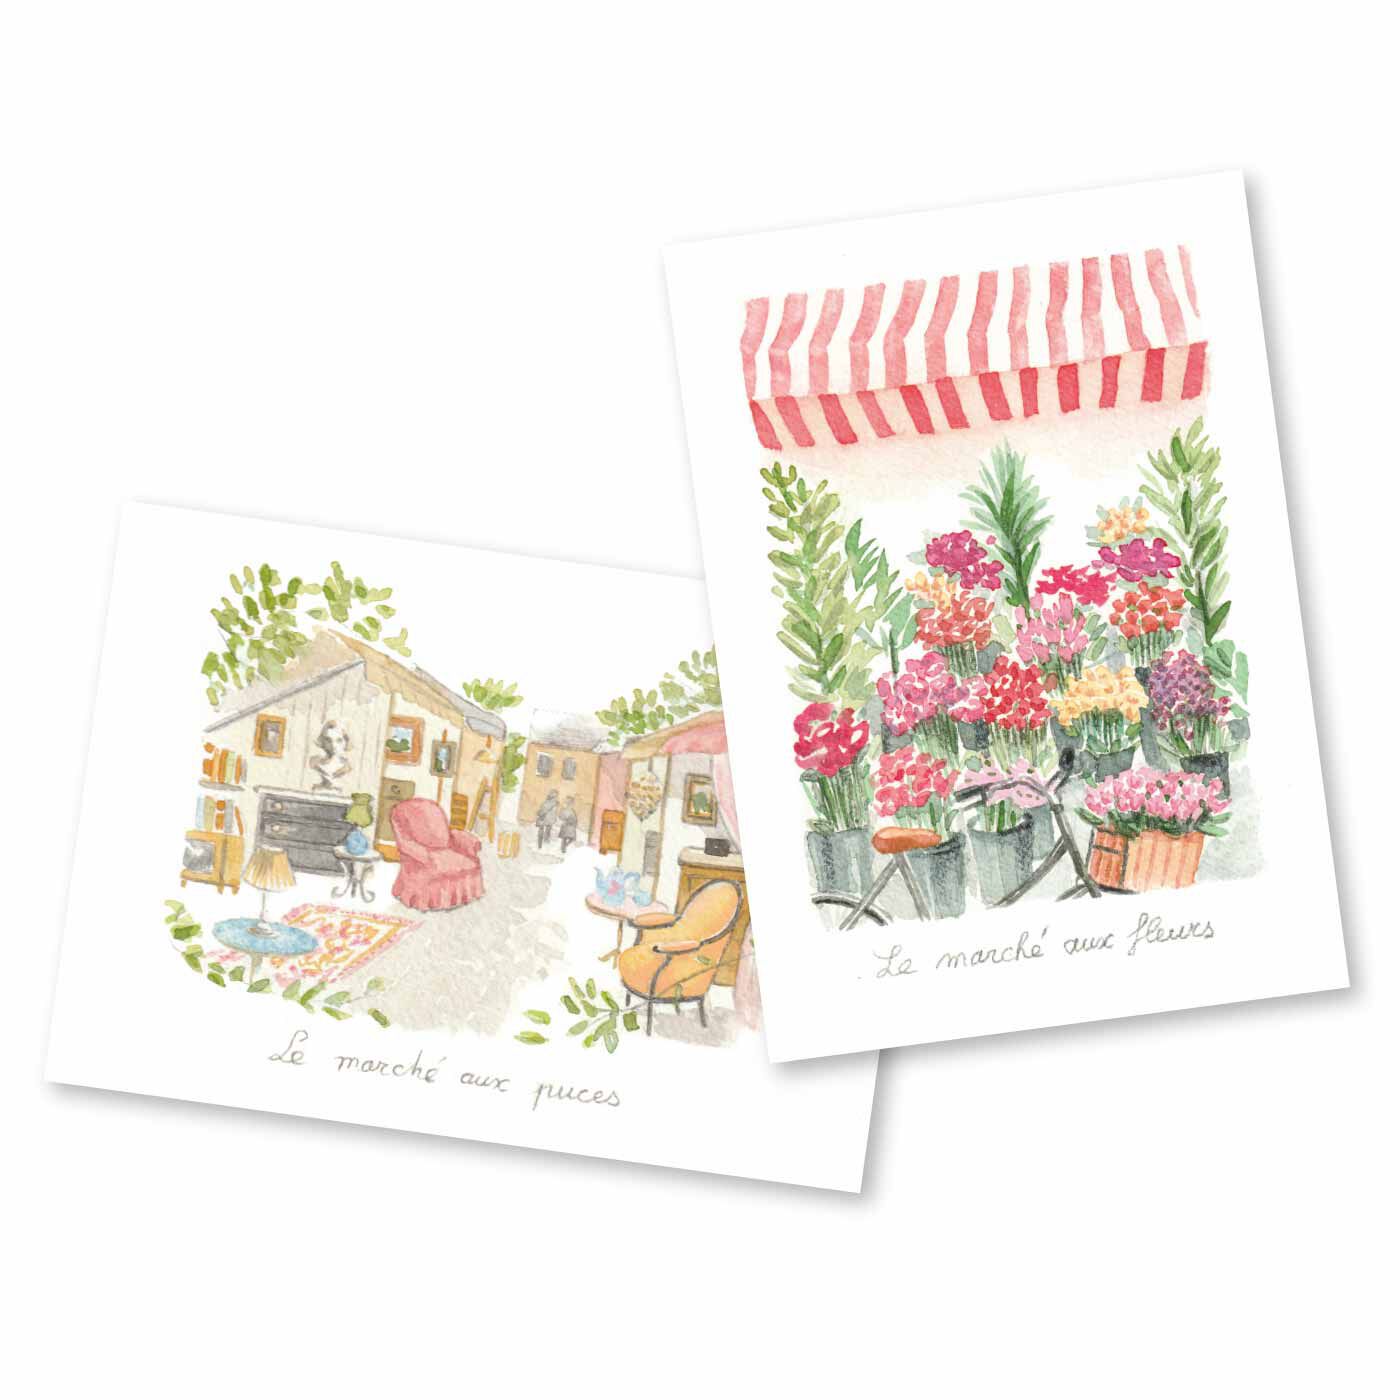 クチュリエ|アンヌさんが描くフランスの暮らしと四季の風景クロスステッチの会|アンヌさんオリジナルのイラストカード付き。